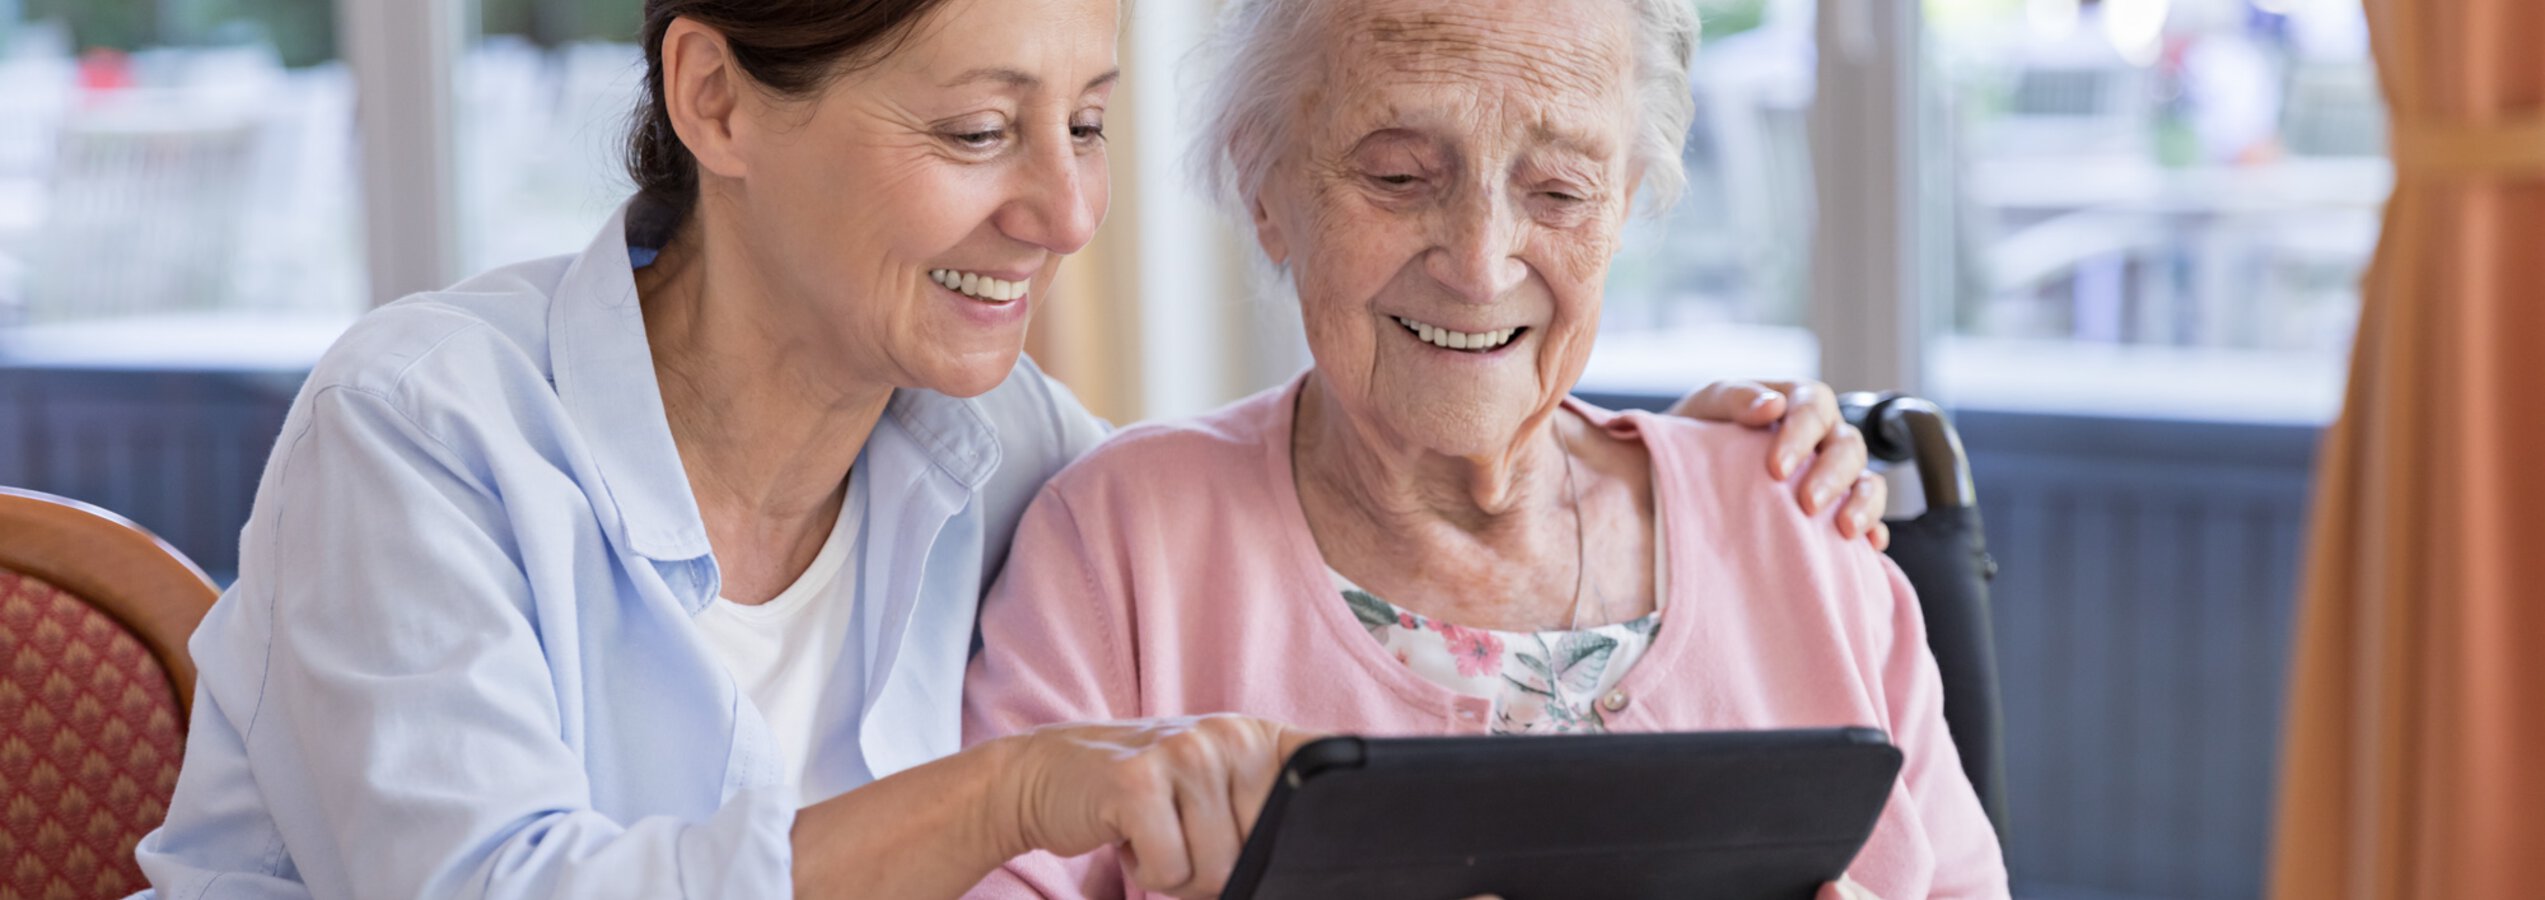 Caritas Altenpflegerin zeigt einer Seniorin etwas auf einem Tablet | © FredFroese/Getty Images